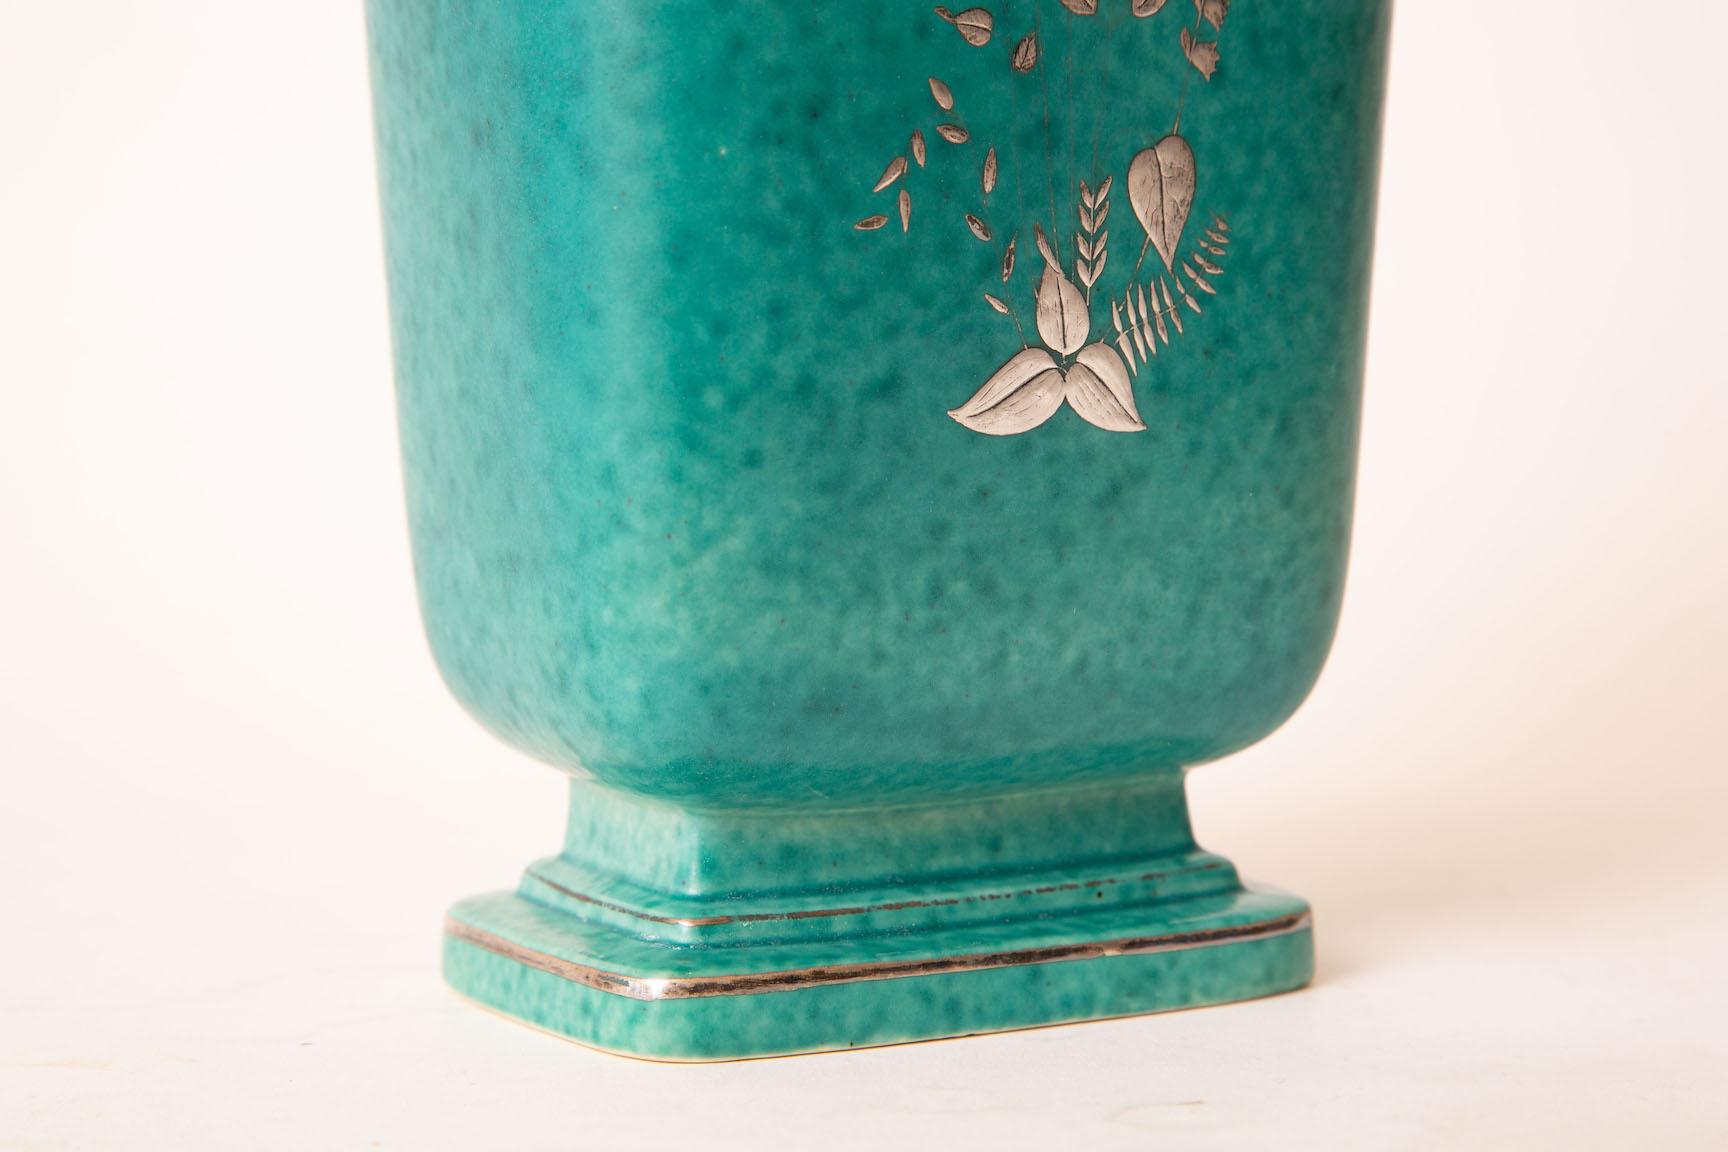 Sterling Silver Wlihelm Kage Gustavsberg Argenta Ceramic with Sterling Overlay Vase or Vessel